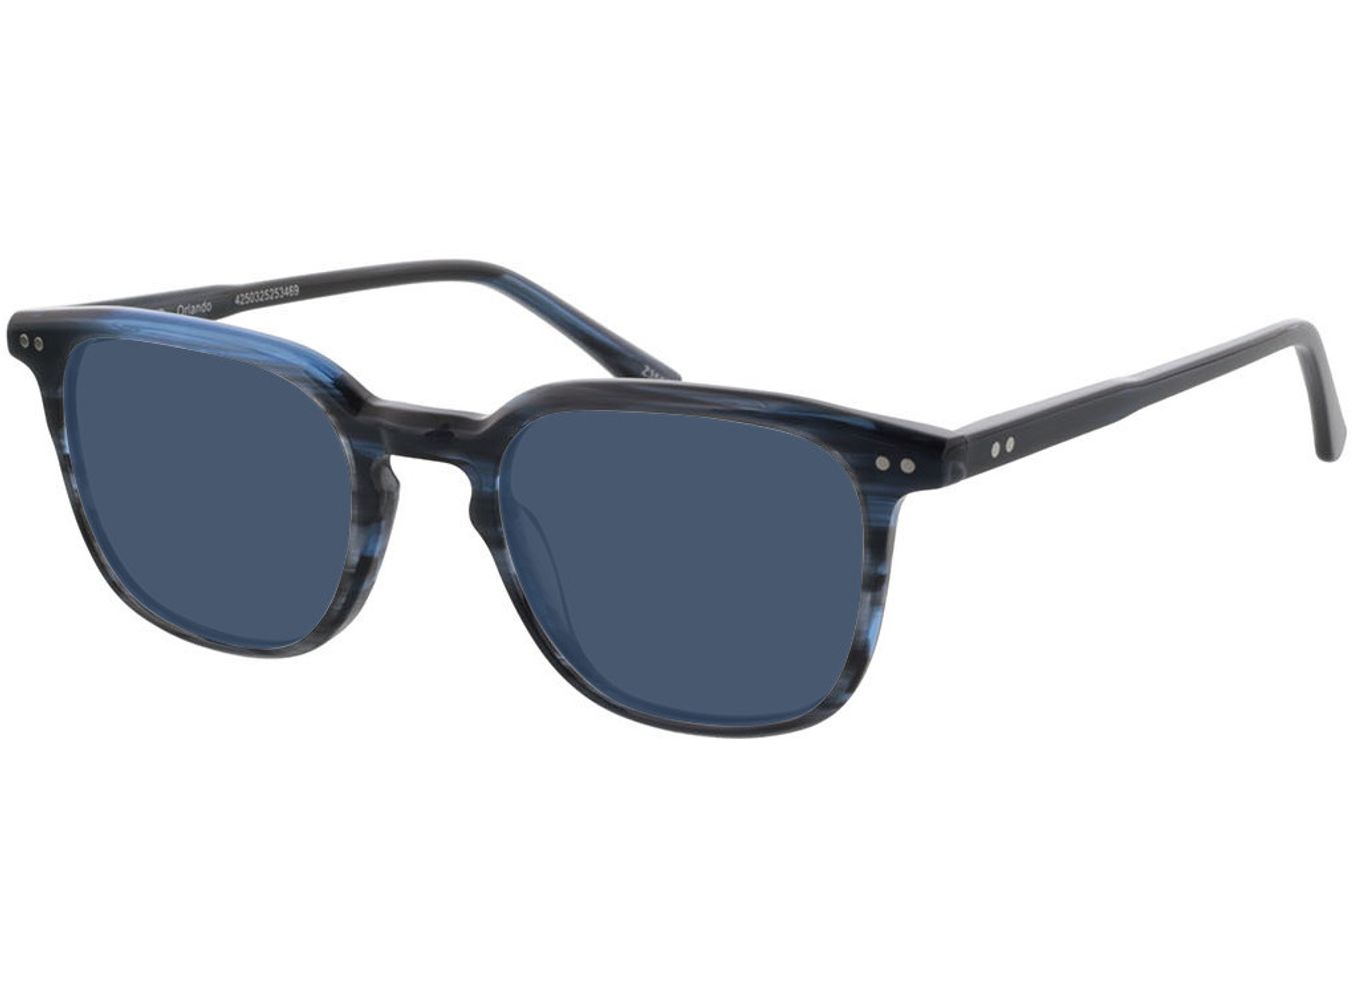 Orlando - blau Sonnenbrille mit Sehstärke, Vollrand, Eckig von Brille24 Collection